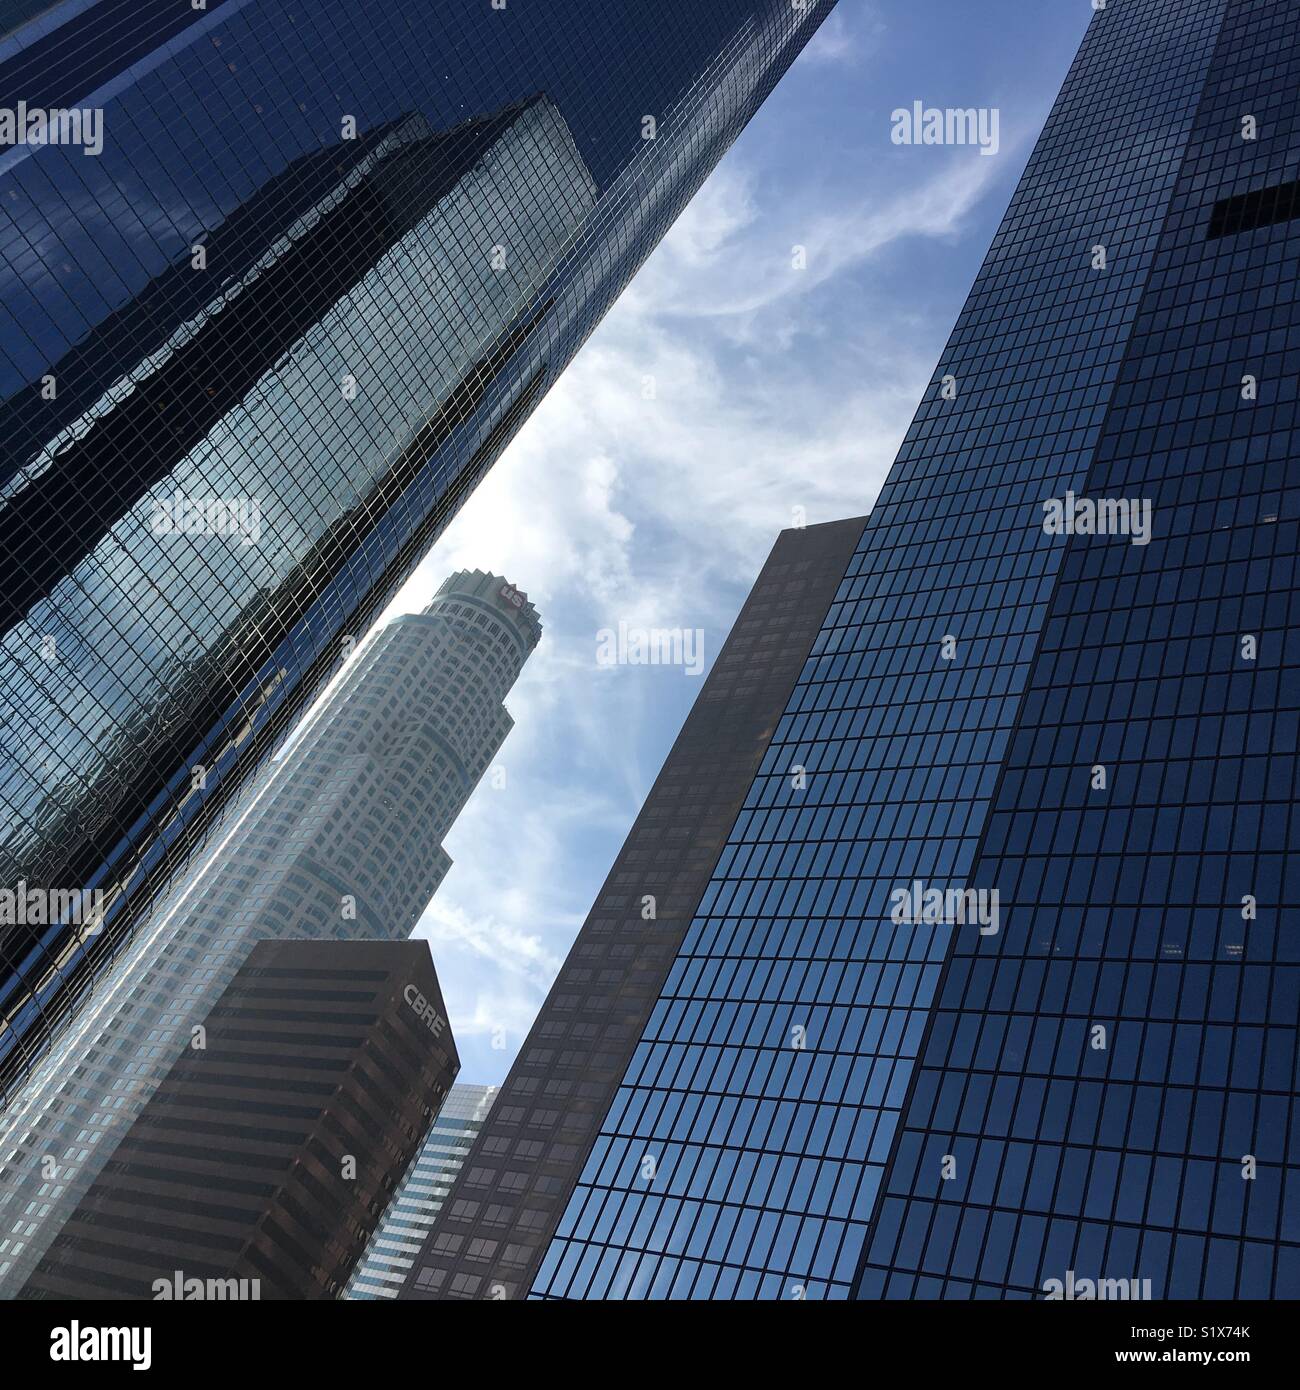 US Bank Tower entouré de gratte-ciel dans le centre-ville de Los Angeles Banque D'Images